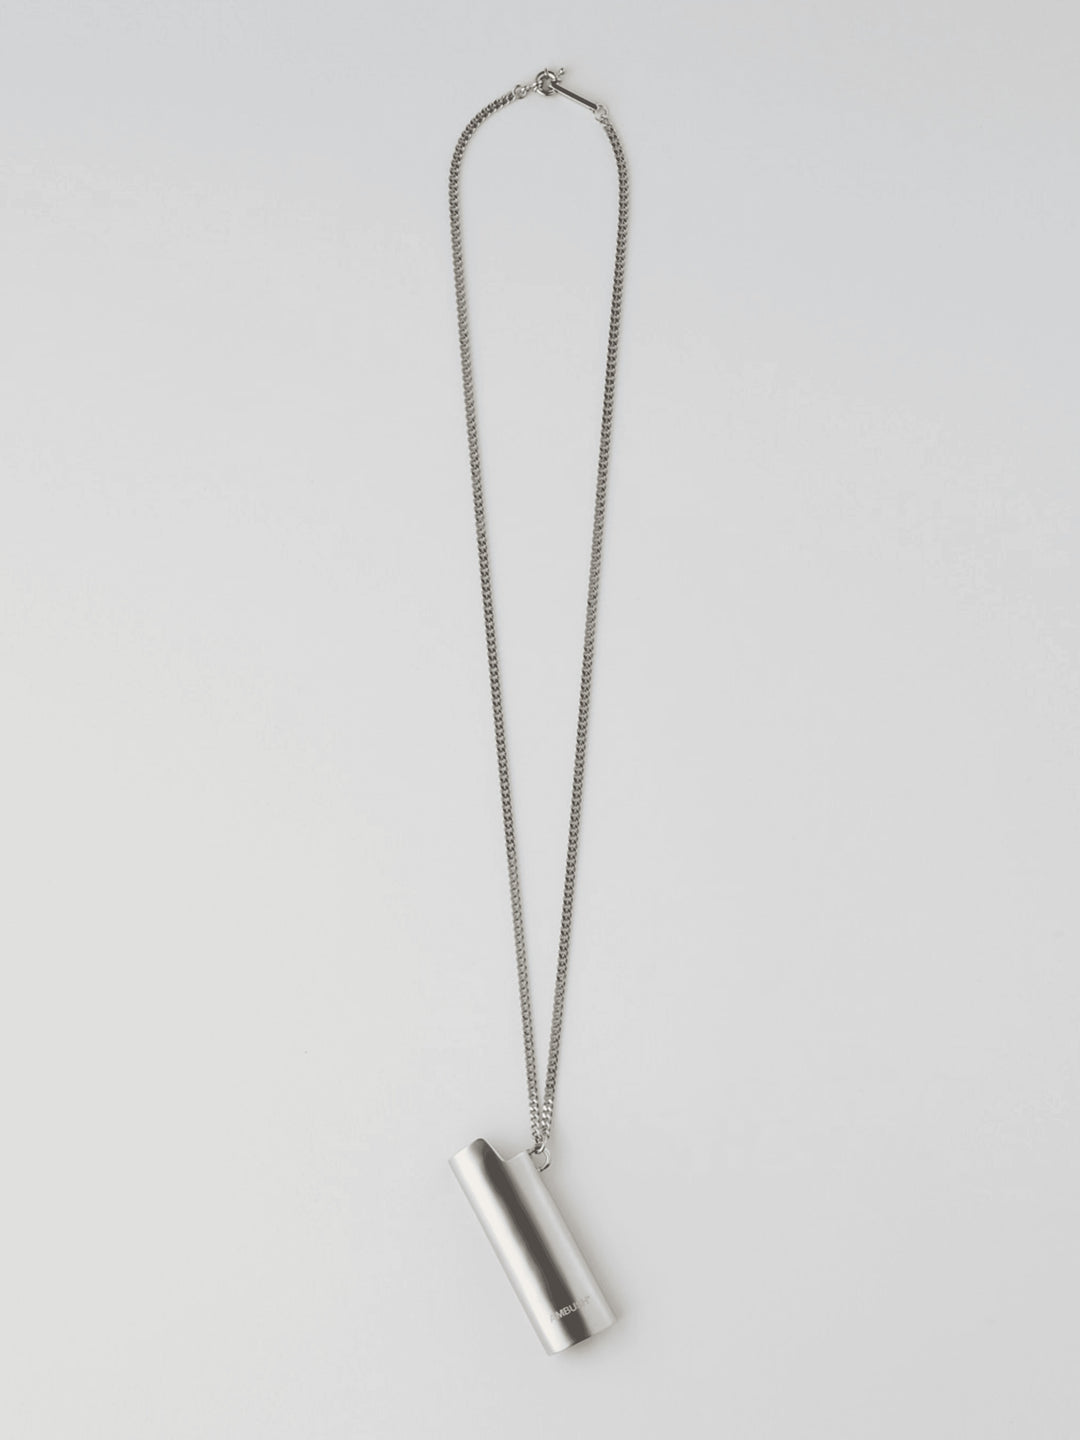 Ambush Lighter Case Necklace (Silver) Large (USED) Ambush